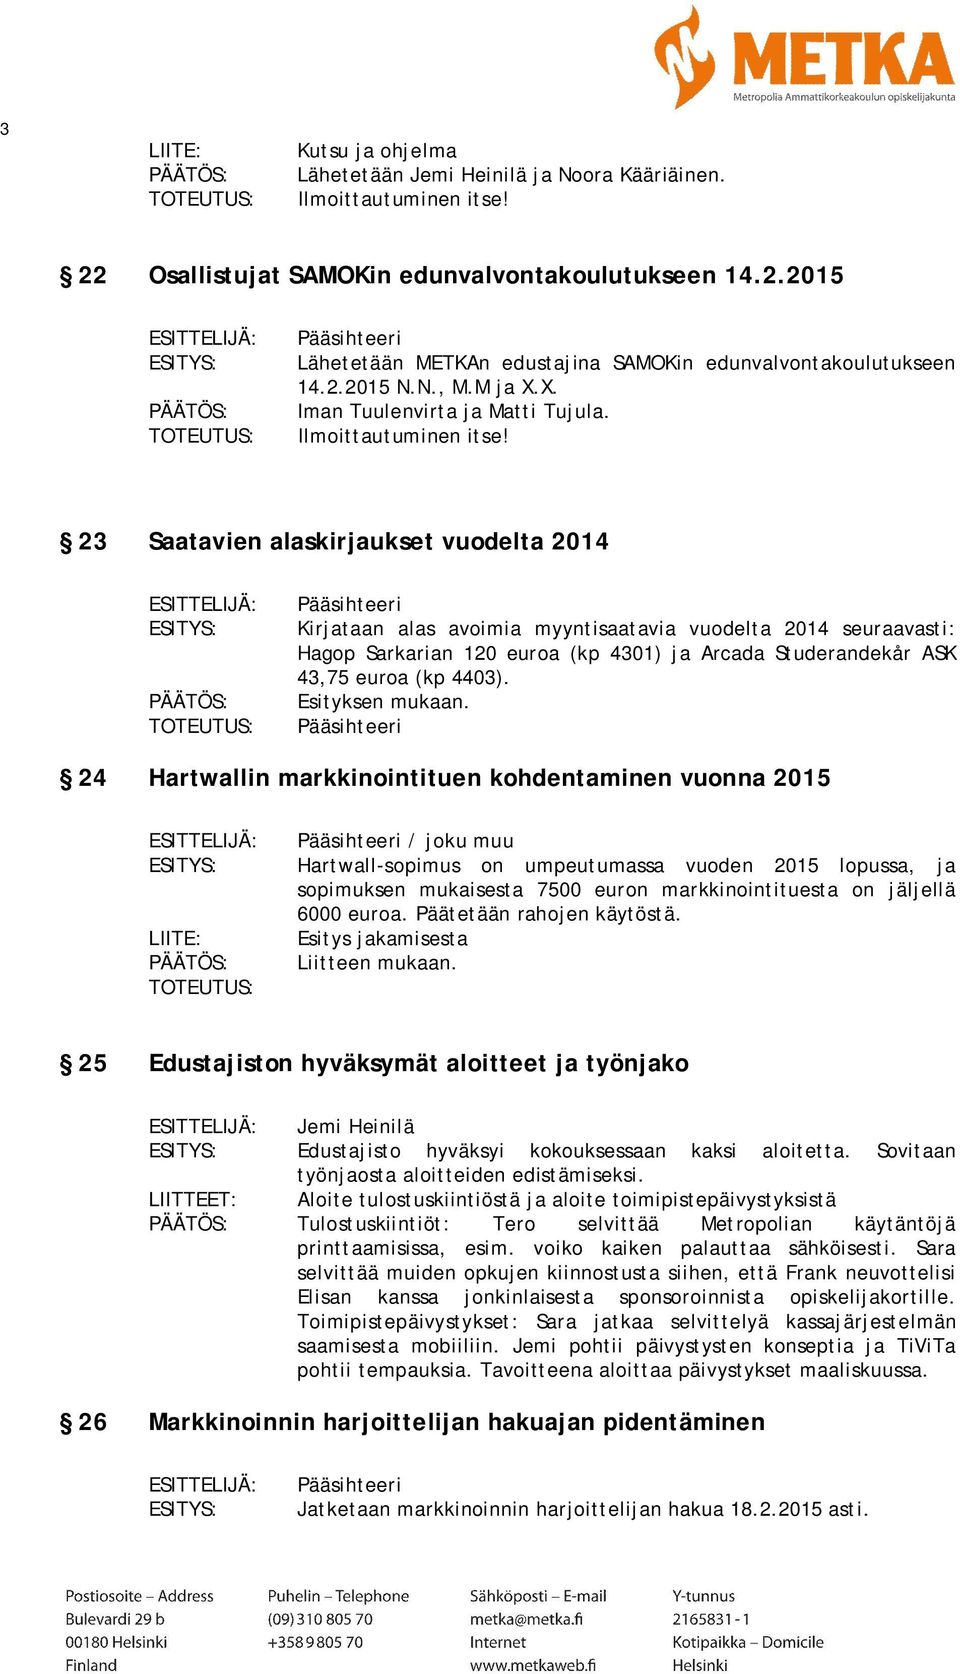 23 Saatavien alaskirjaukset vuodelta 2014 Kirjataan alas avoimia myyntisaatavia vuodelta 2014 seuraavasti: Hagop Sarkarian 120 euroa (kp 4301) ja Arcada Studerandekår ASK 43,75 euroa (kp 4403).